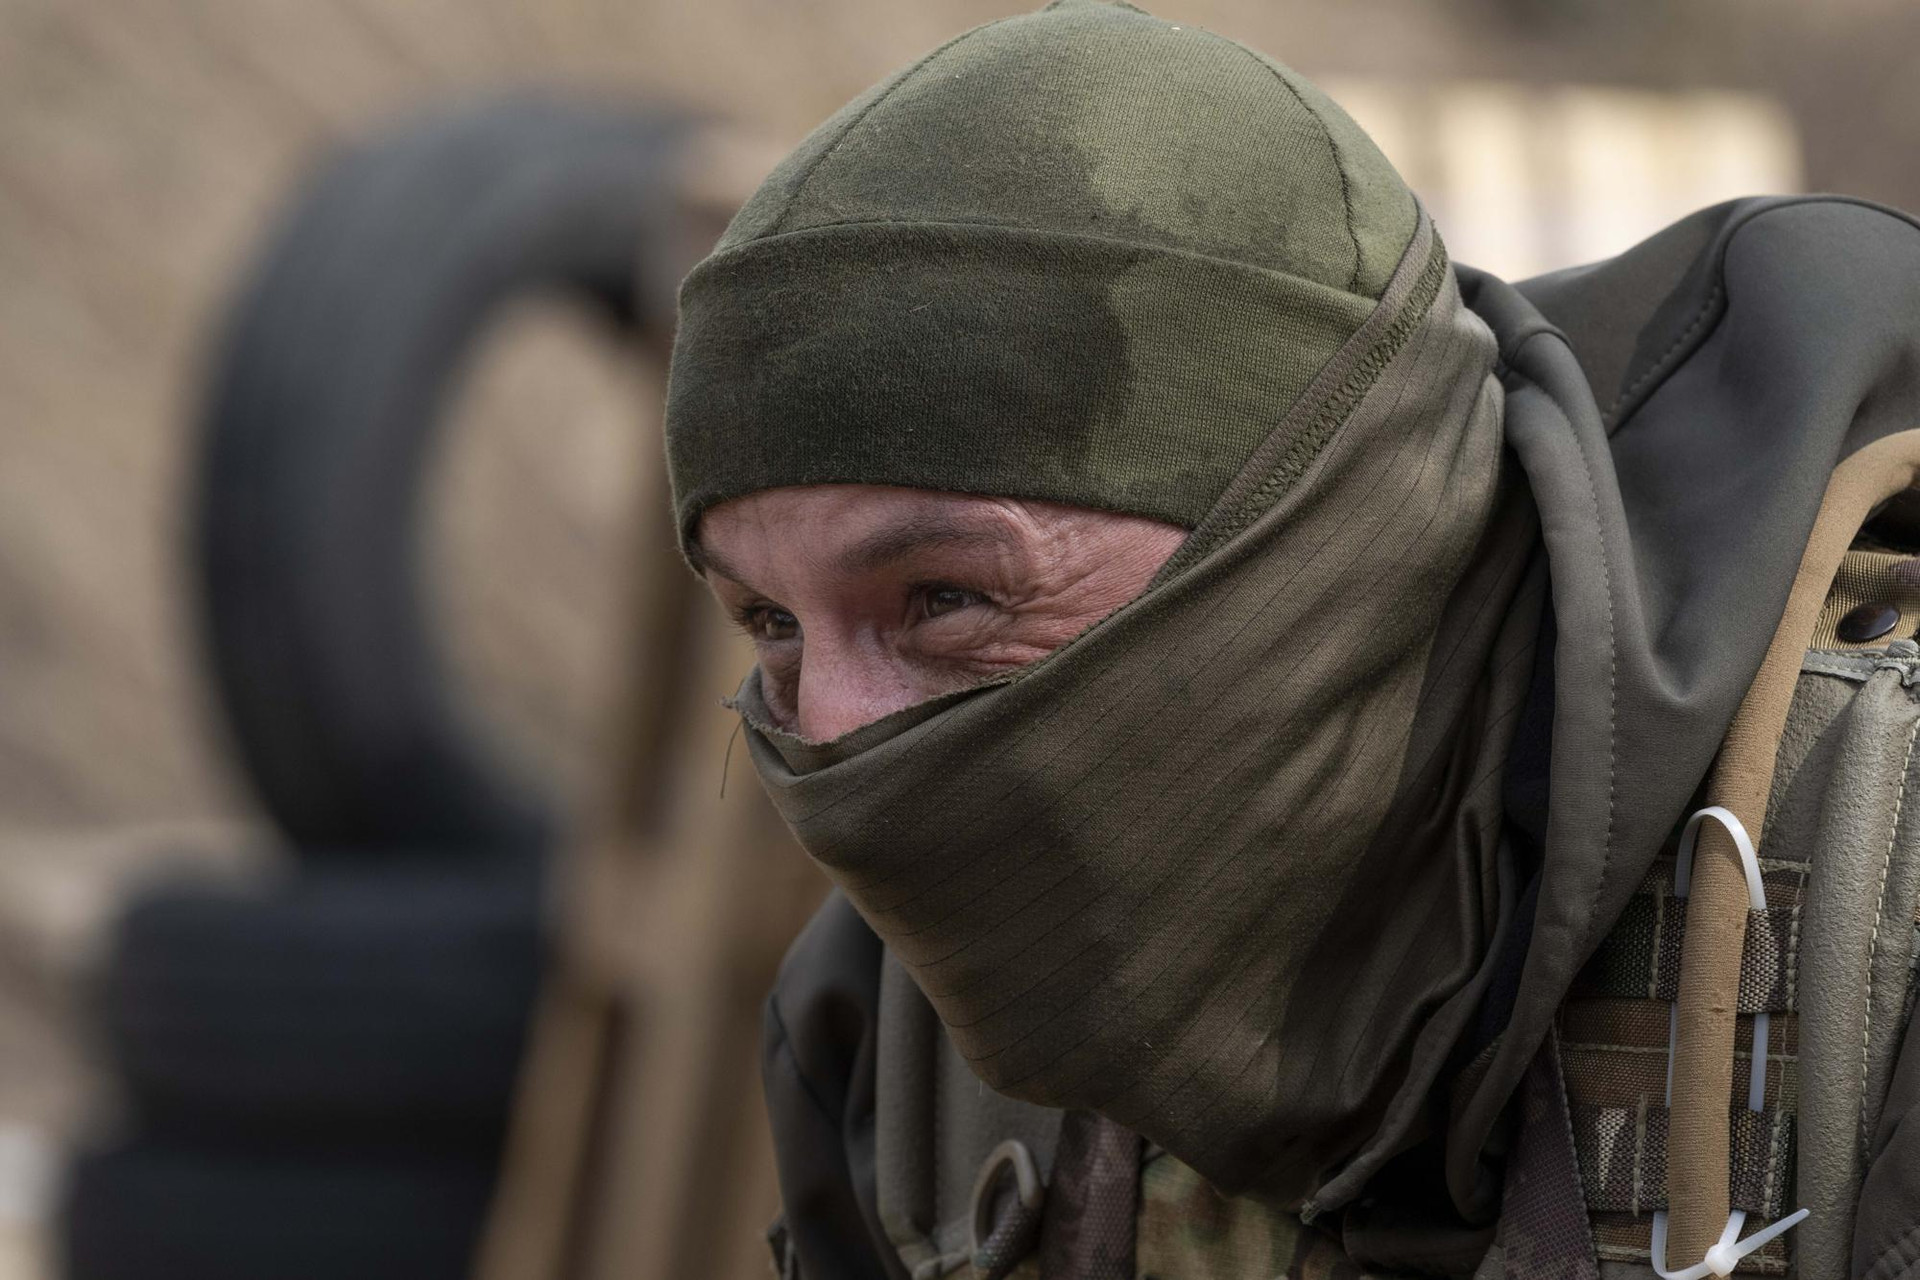 Quân nhân Ukraine trong một cuộc tập trận tại một địa điểm không được tiết lộ, gần Lviv, miền Tây Ukraine. Ảnh: AP.